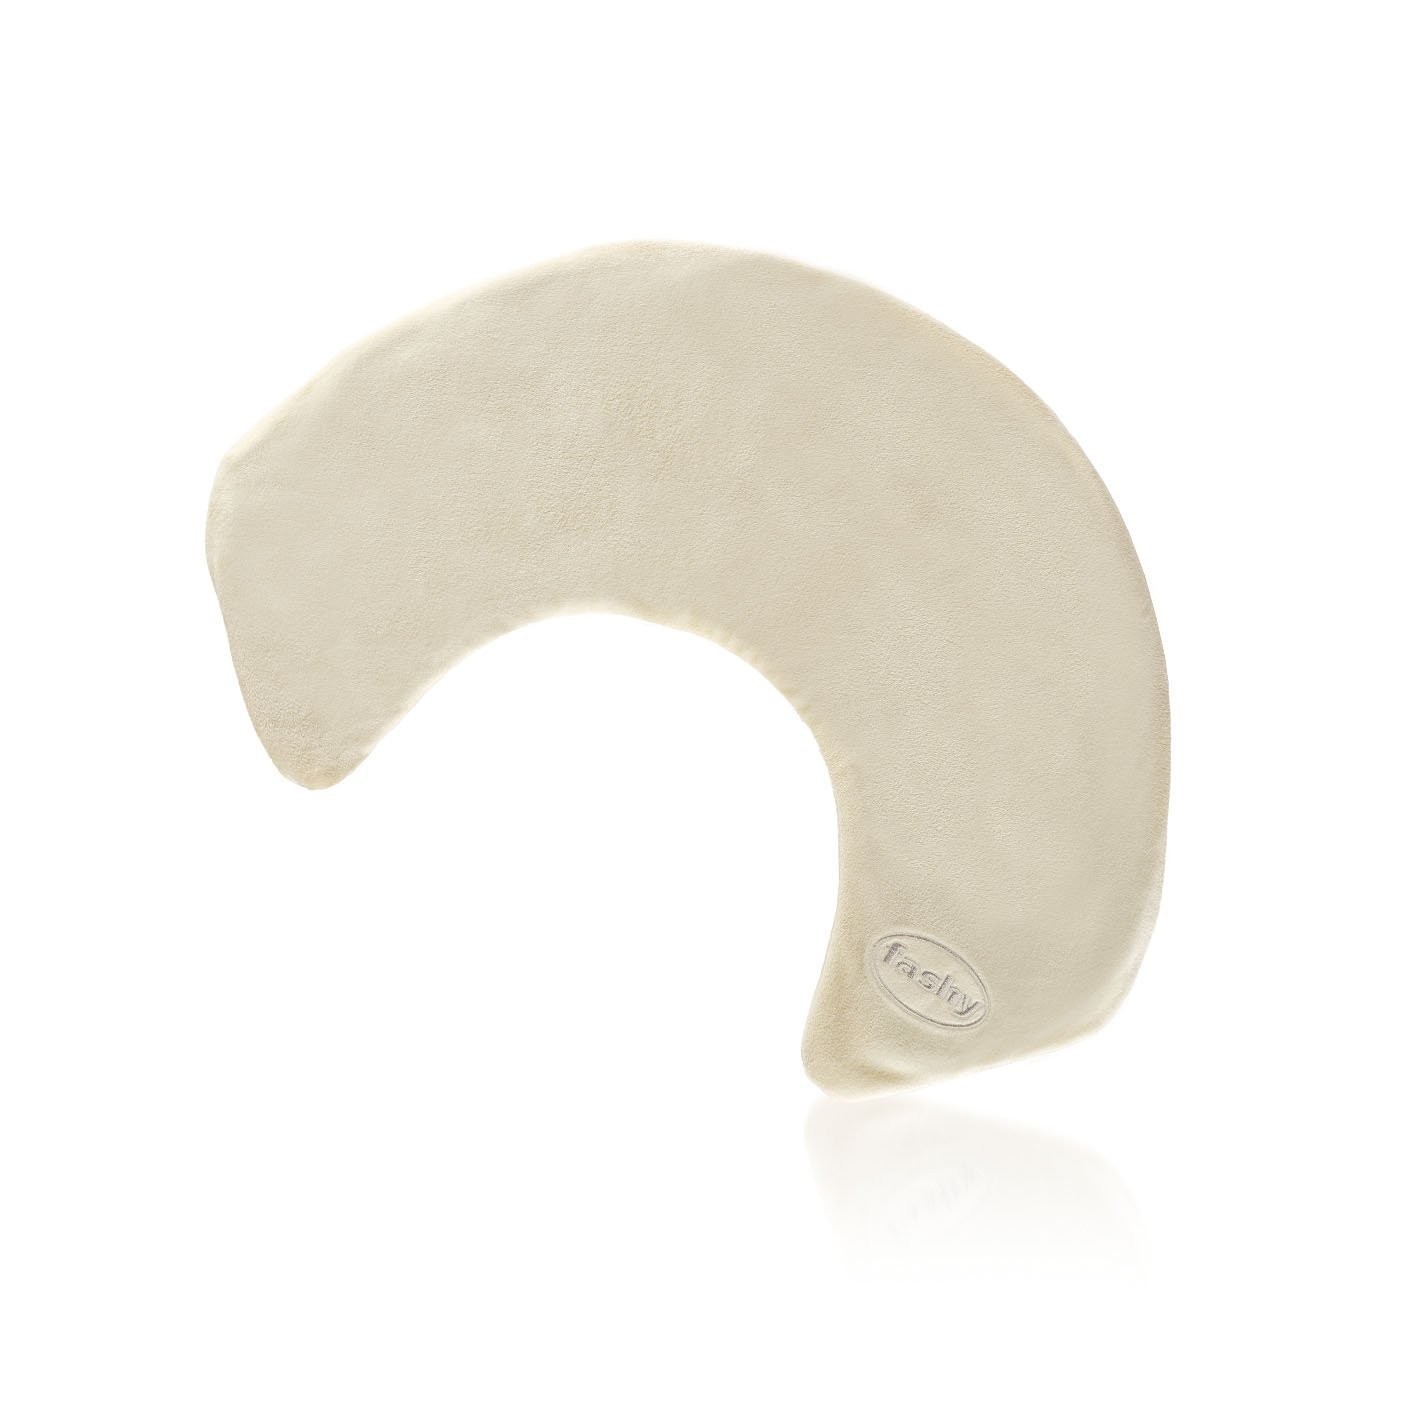 Fashy pittenzak voor de nek met koolzaadvulling | Kraagvorm | Circa 48 x 35 cm